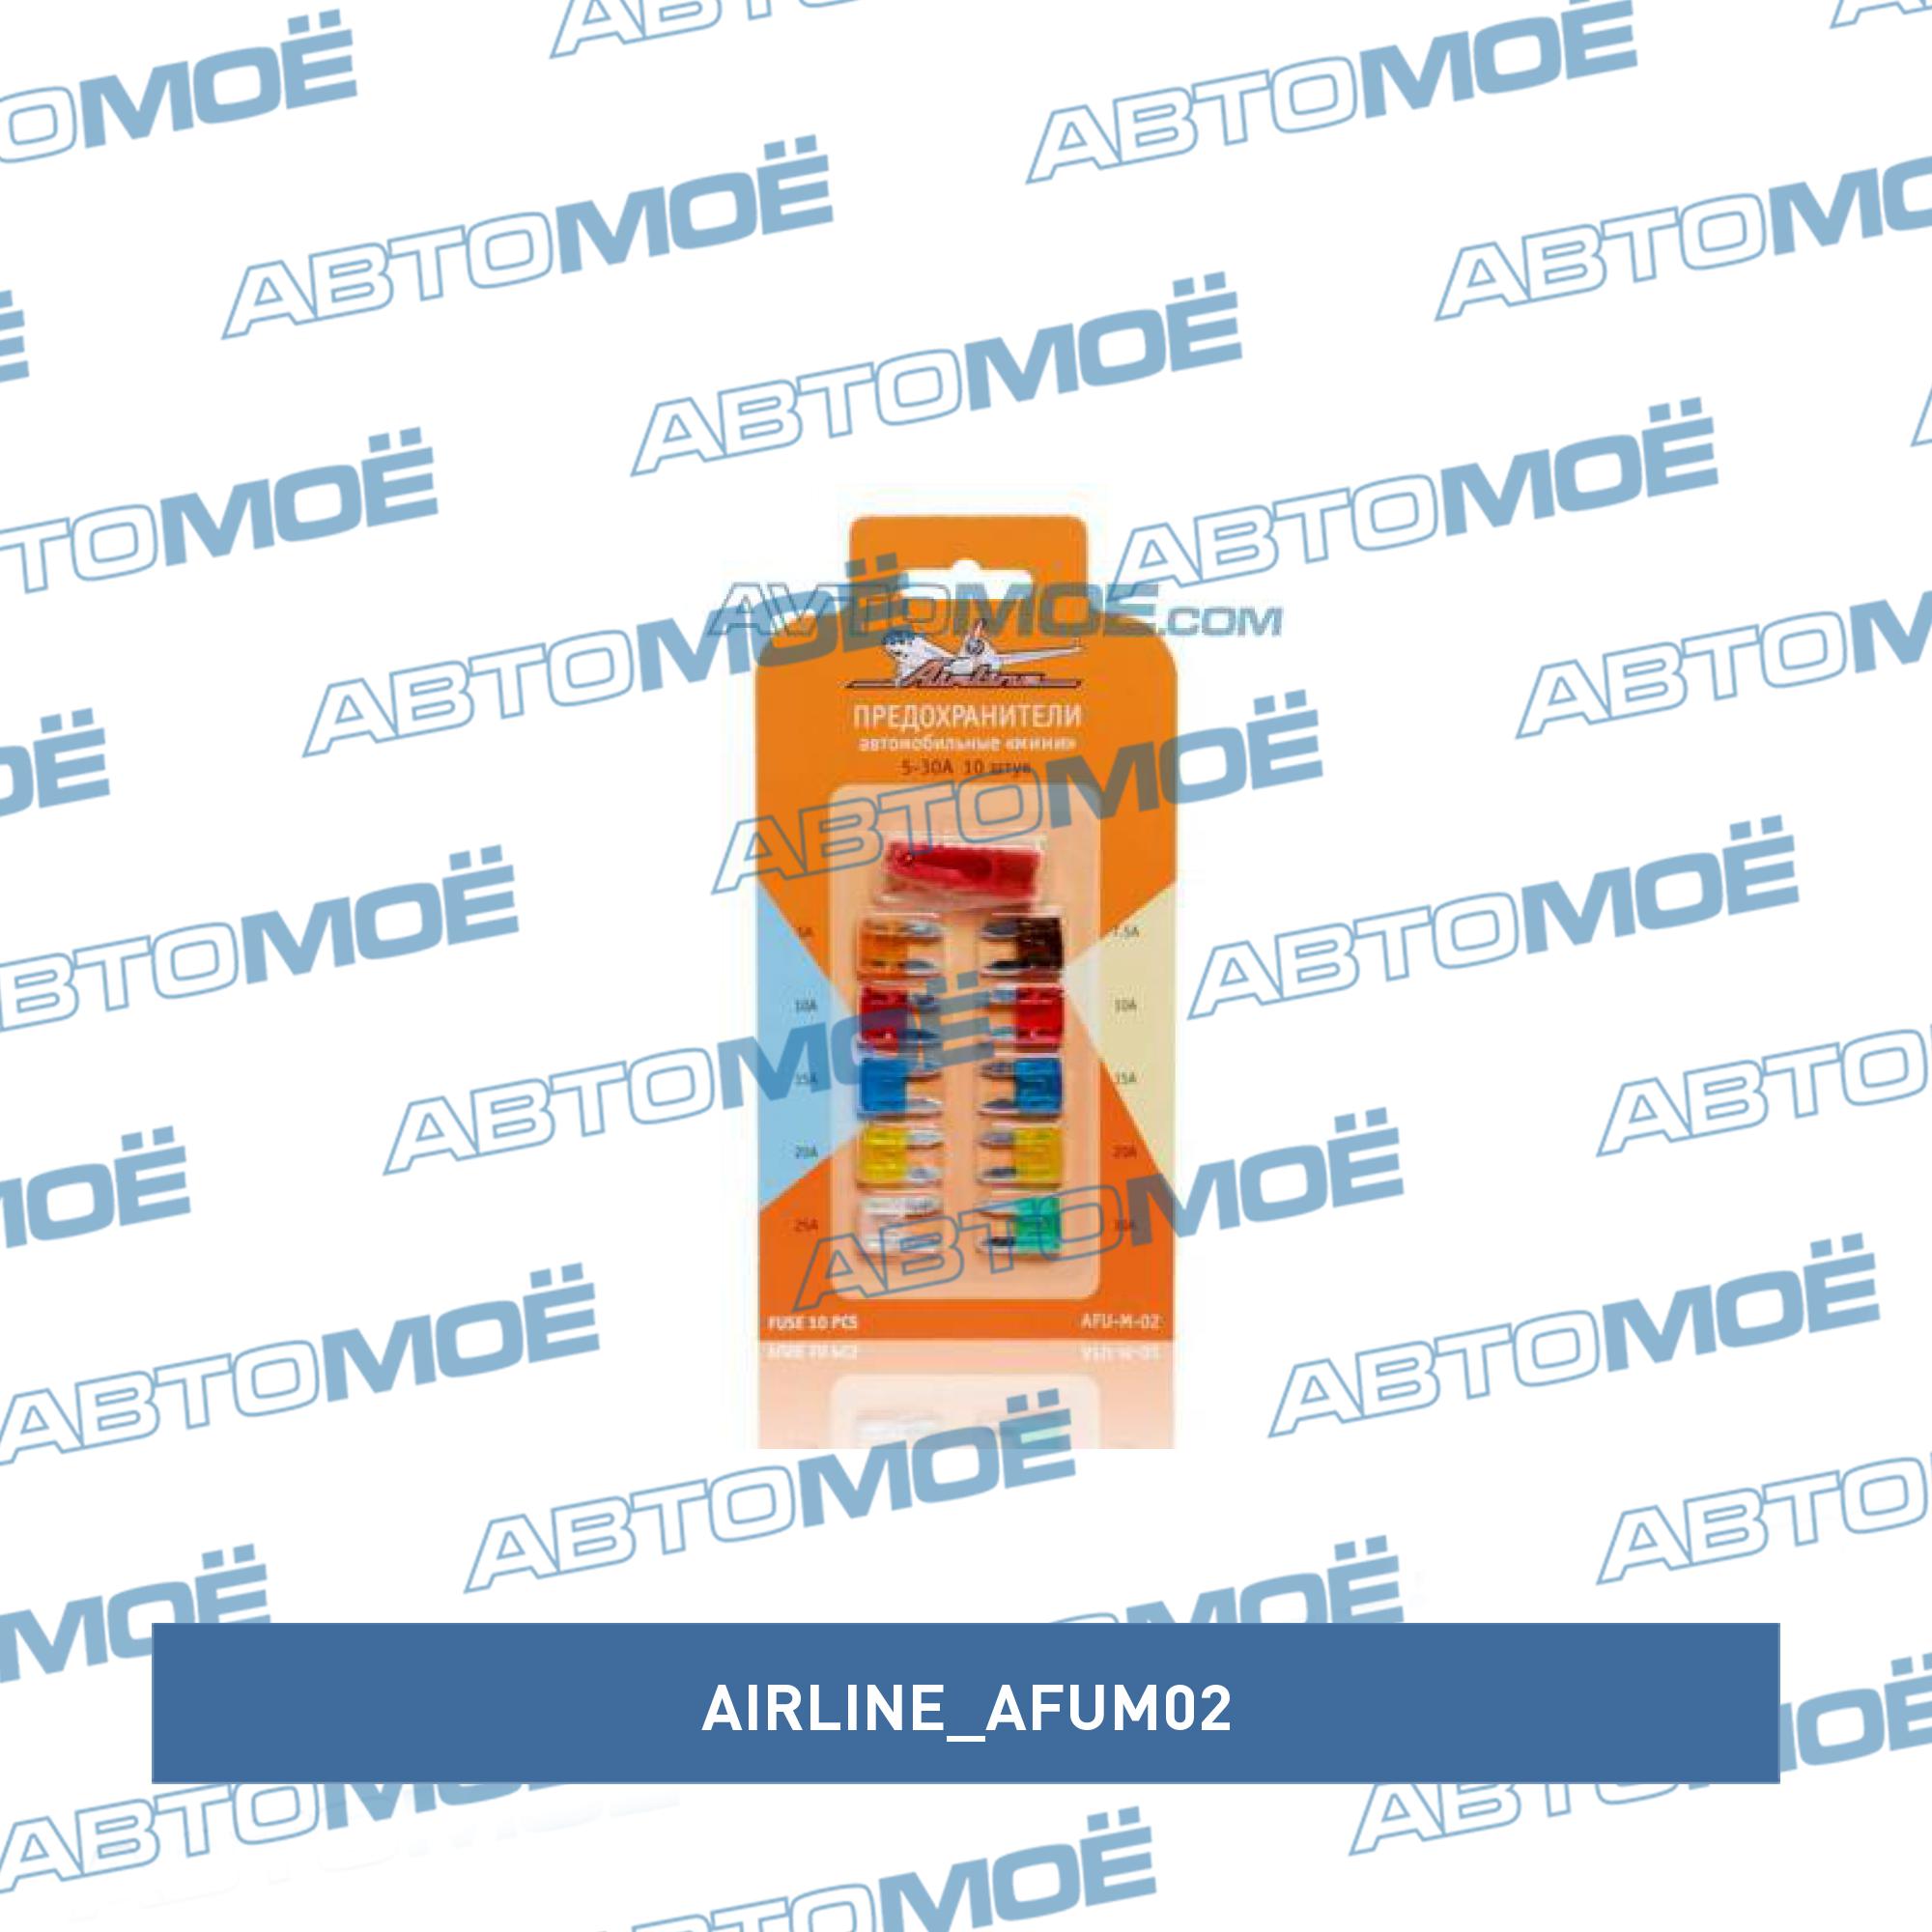 Предохранители Mini комплект 10шт 5-30А AIRLINE AFUM02